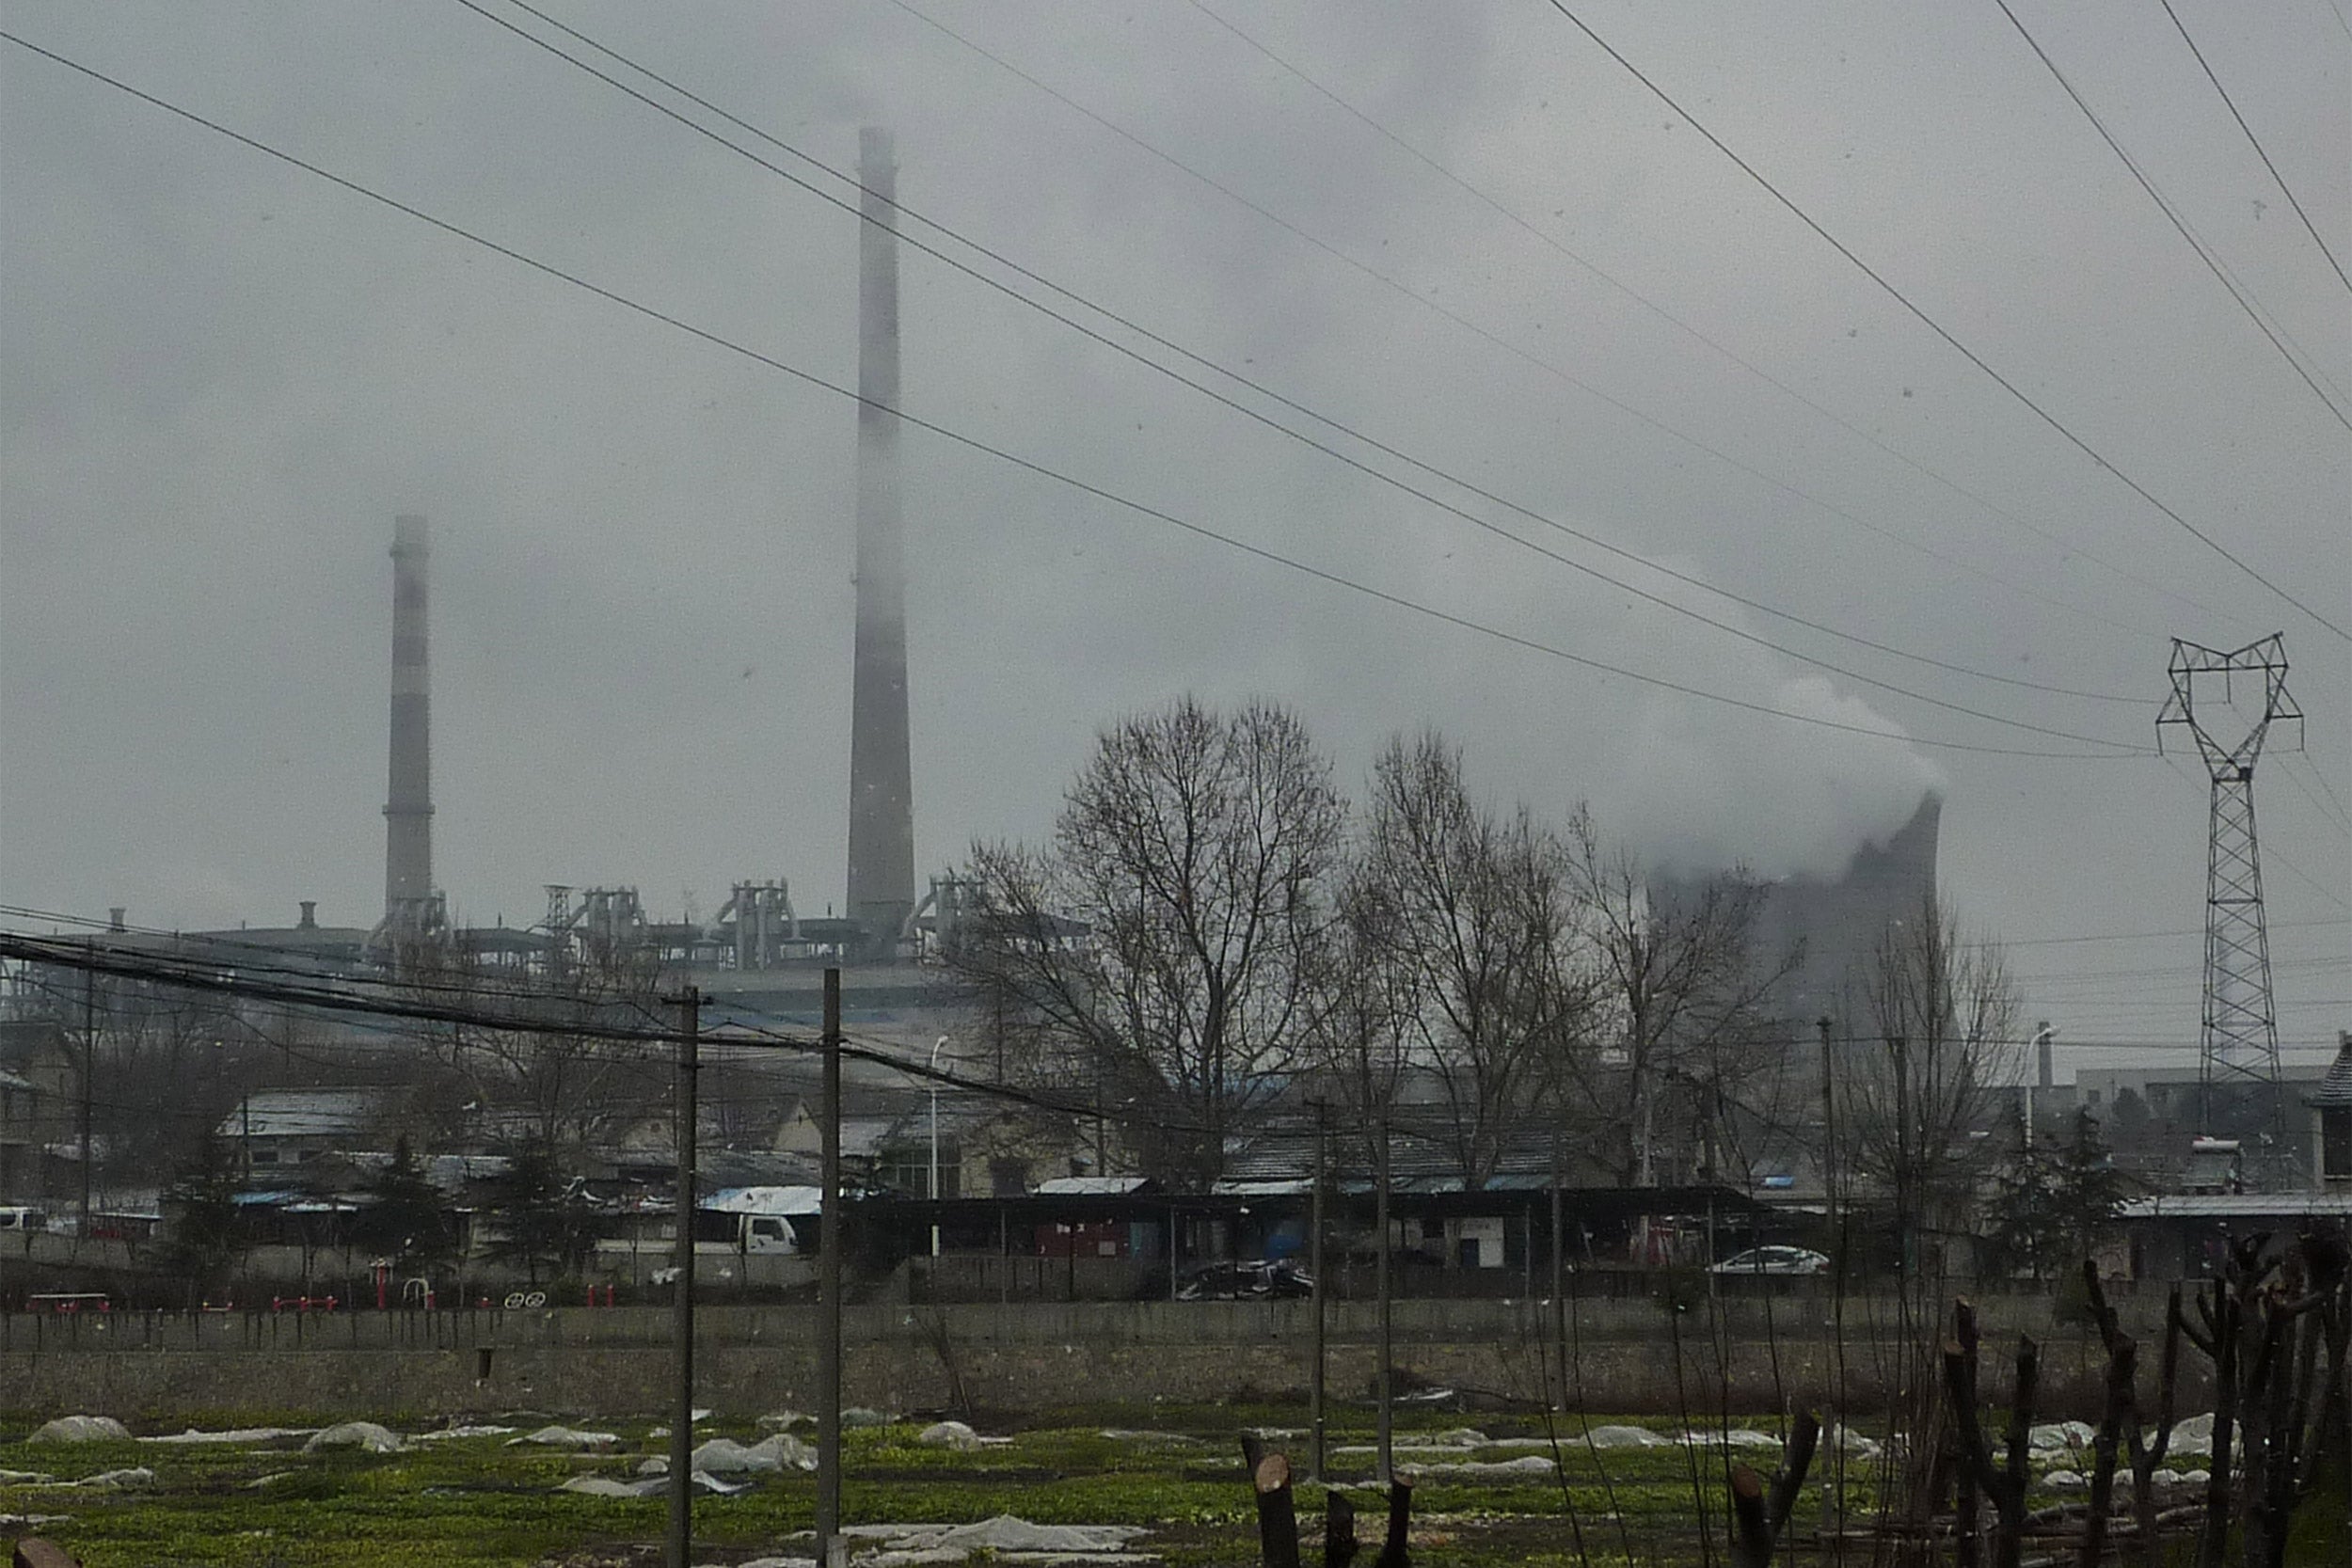 Ganjiaxiang's industrial panorama.